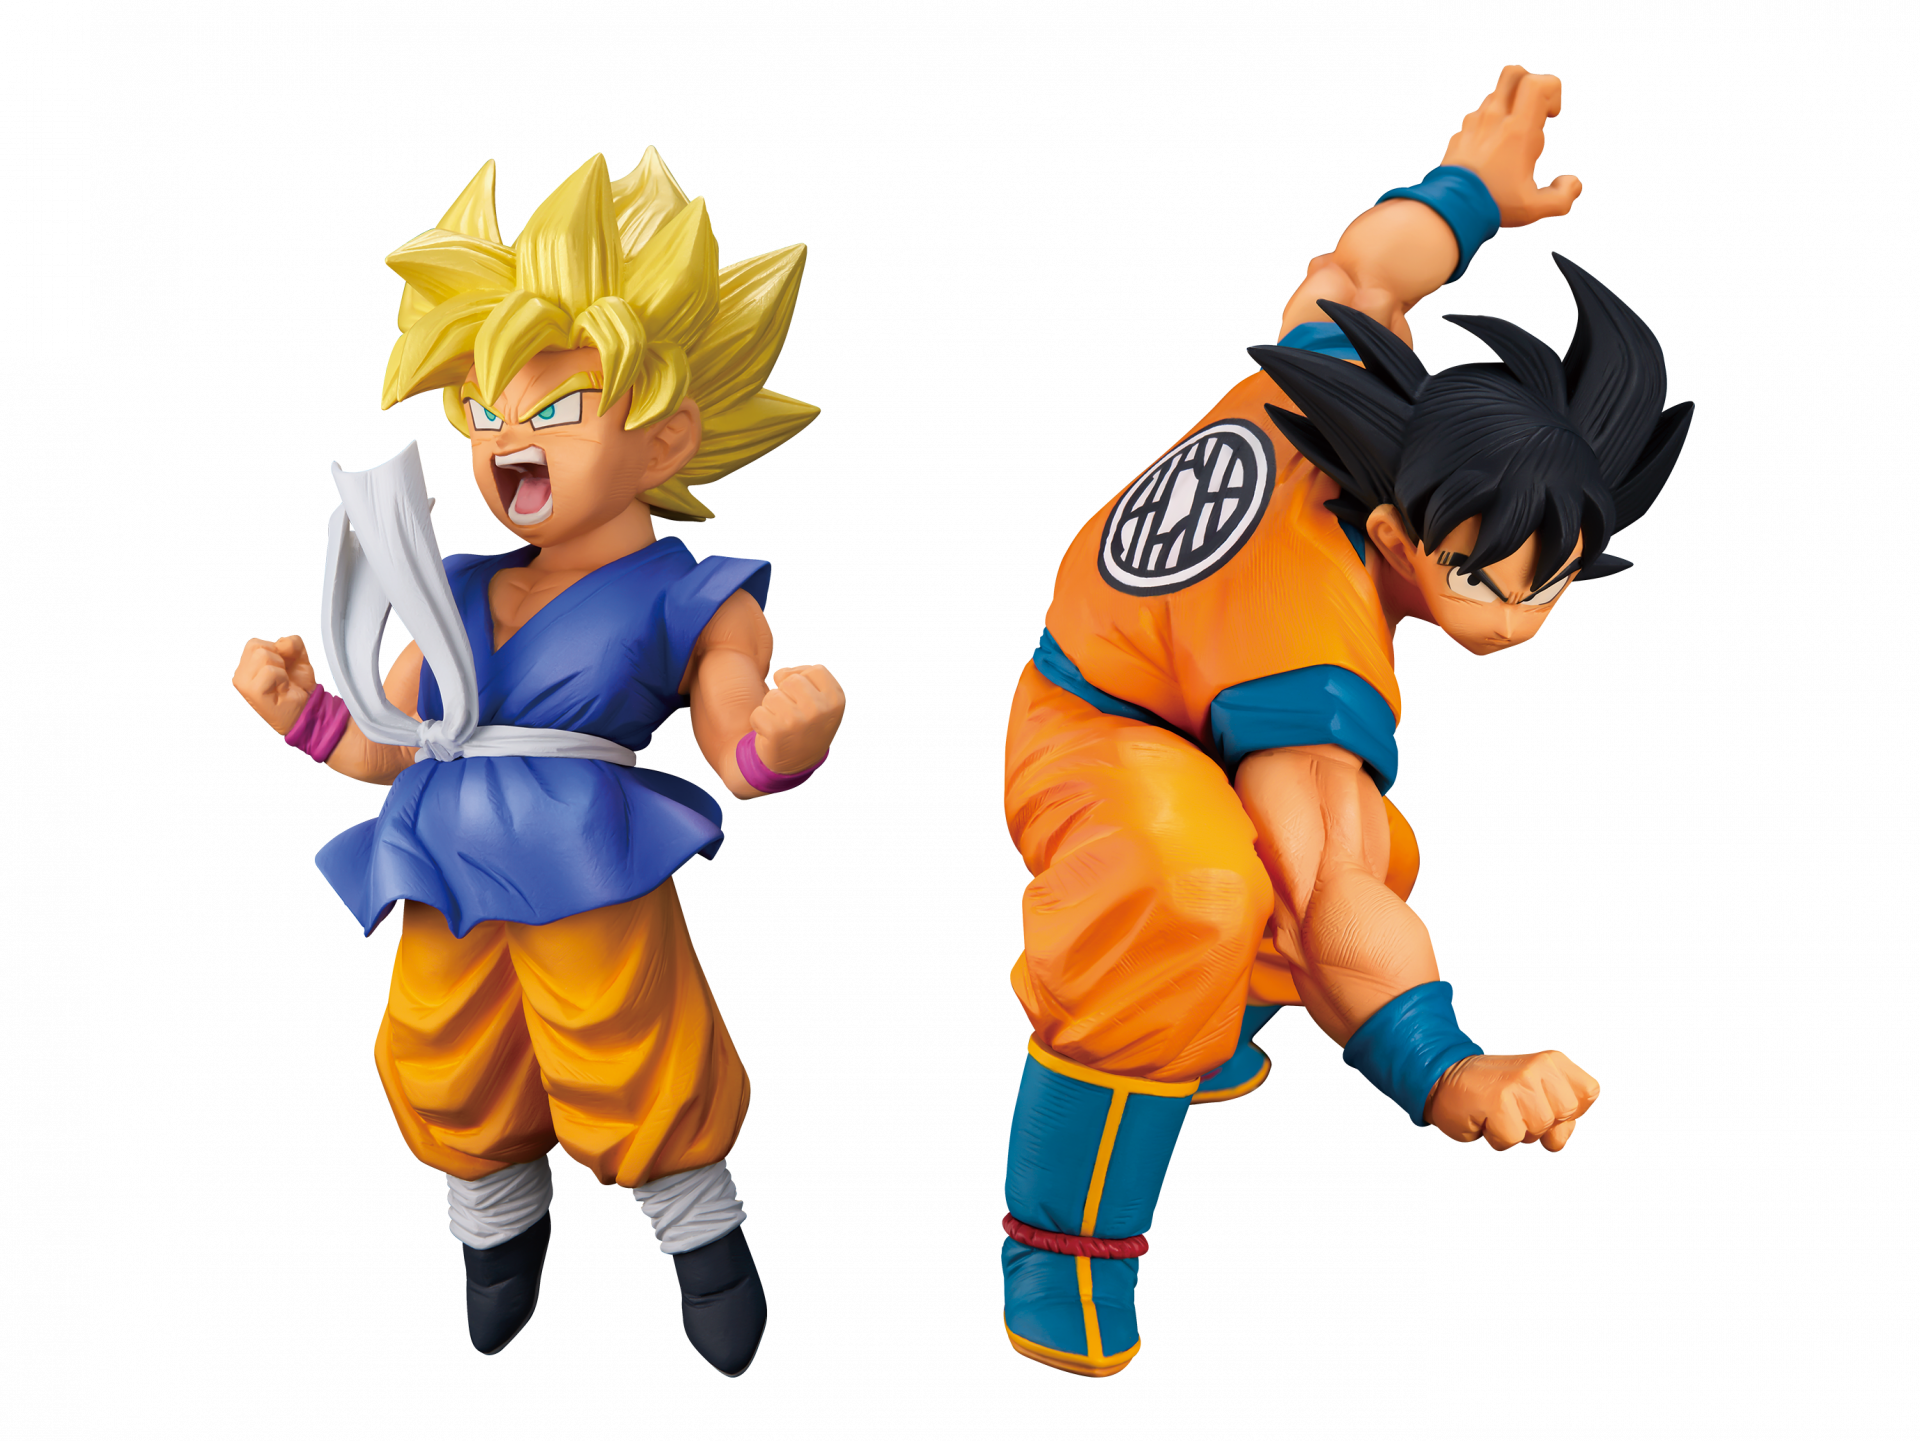 ¡¡Goku FES !! ¡No 16! Super Saiyan Goku (niño) y Goku de pelo negro se unen a "¡¡Goku FES !!" ¡Serie! ¡Próximamente en los centros de juegos!